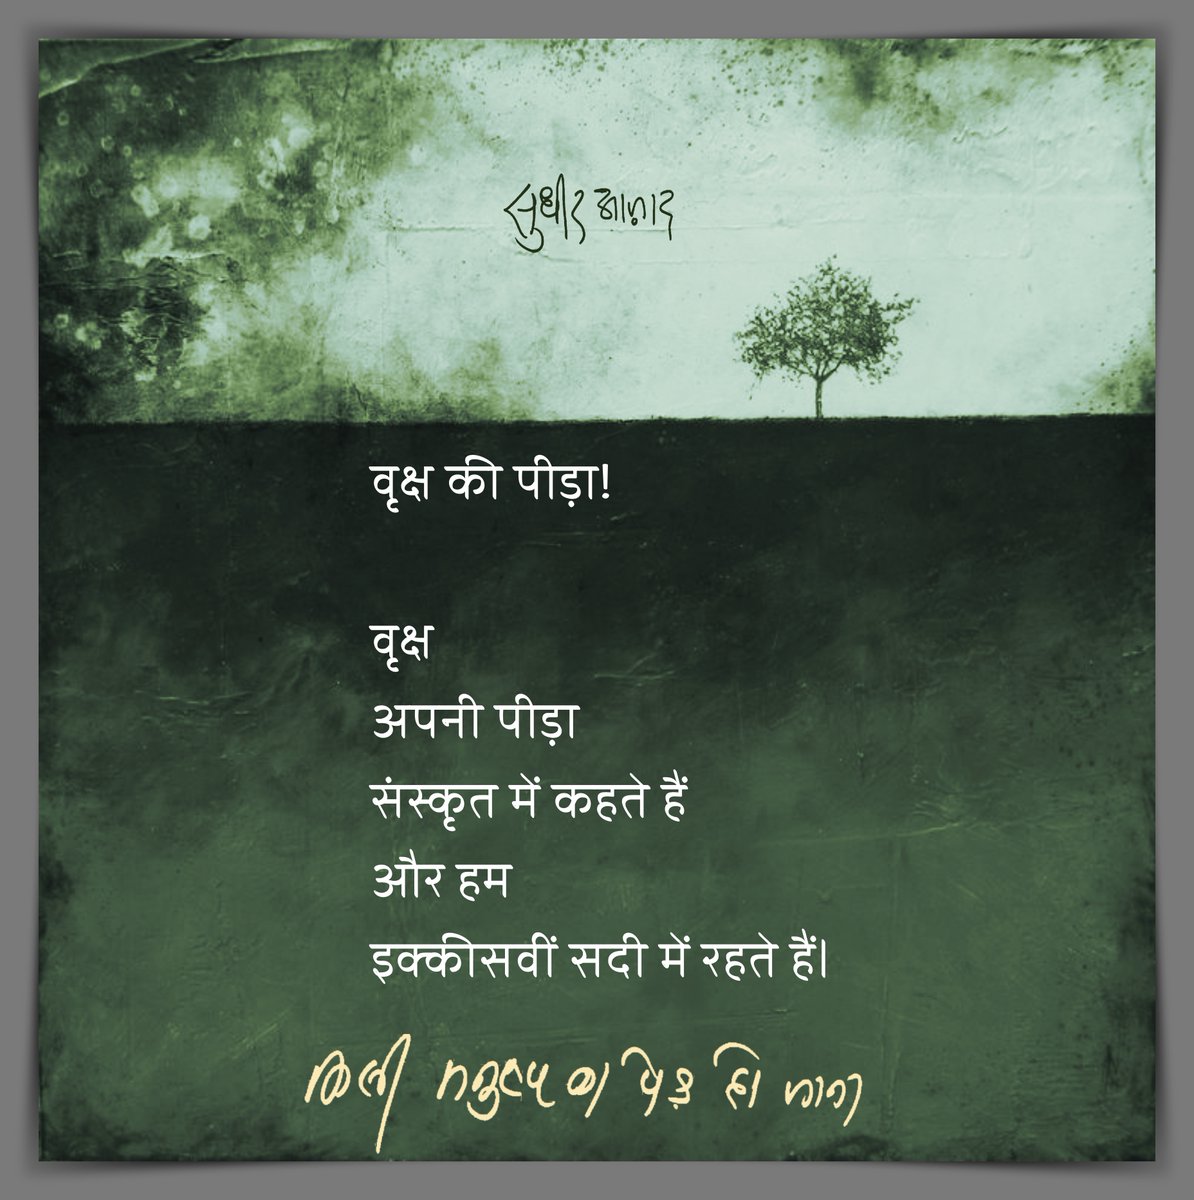 'वृक्ष अपनी पीड़ा संस्कृत में कहते हैं 
और हम इक्कीसवीं सदी में रहते हैं।' - सुधीर आज़ाद   

#किसी_मनुष्य_का_पेड़_हो_जाना #पेड़ #पर्यावरण #हिन्दी_कविता  #वृक्ष #प्रकृति #hindi_kavita #kisi_manushy_ka_ped_ho_jana #pryavaran #prakruti #वाणीपृथ्वी @SudhirAazad
@Vani_Prakashan